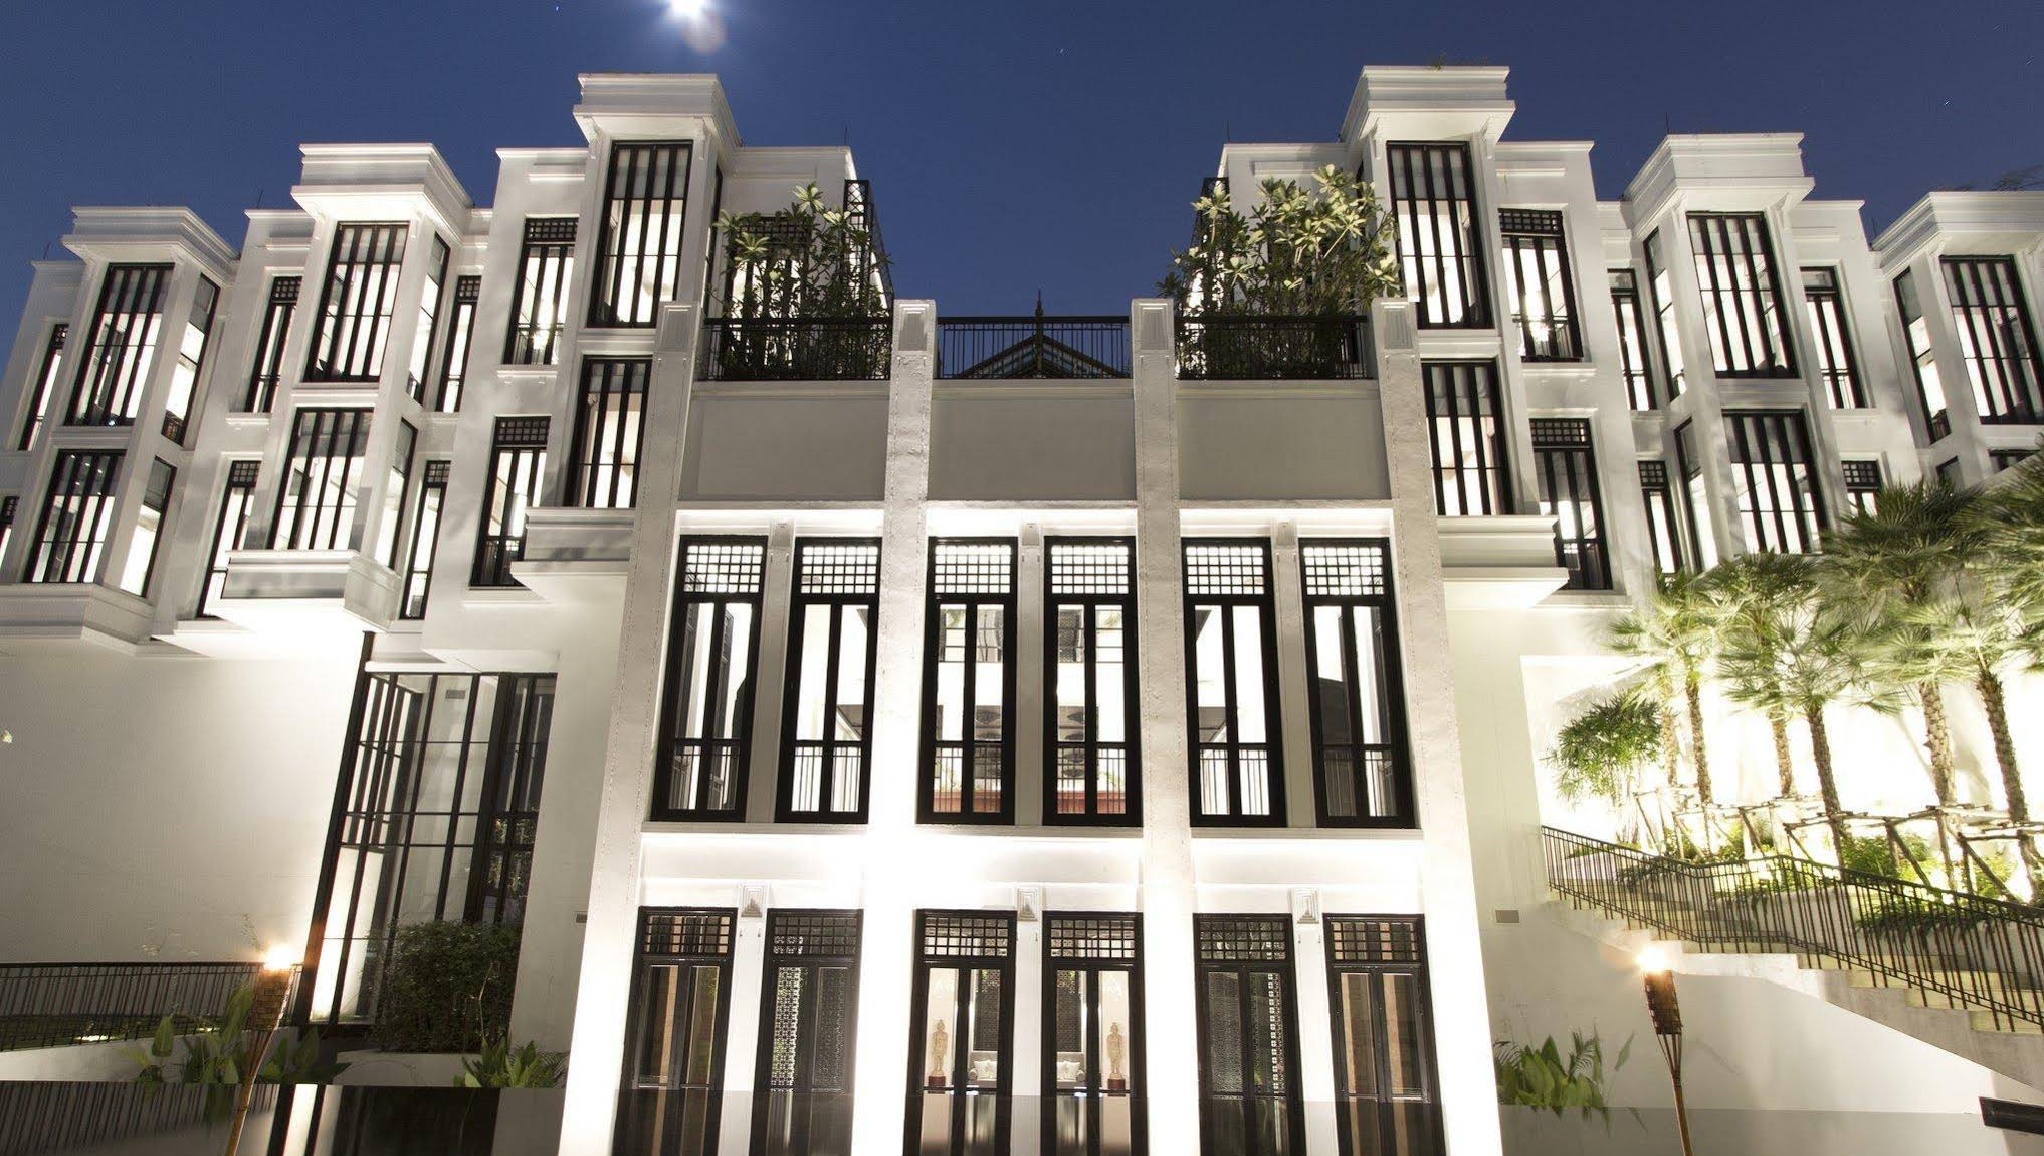  The Siam Bangkok : Hotel yang dibangun oleh Musical Hoteliers